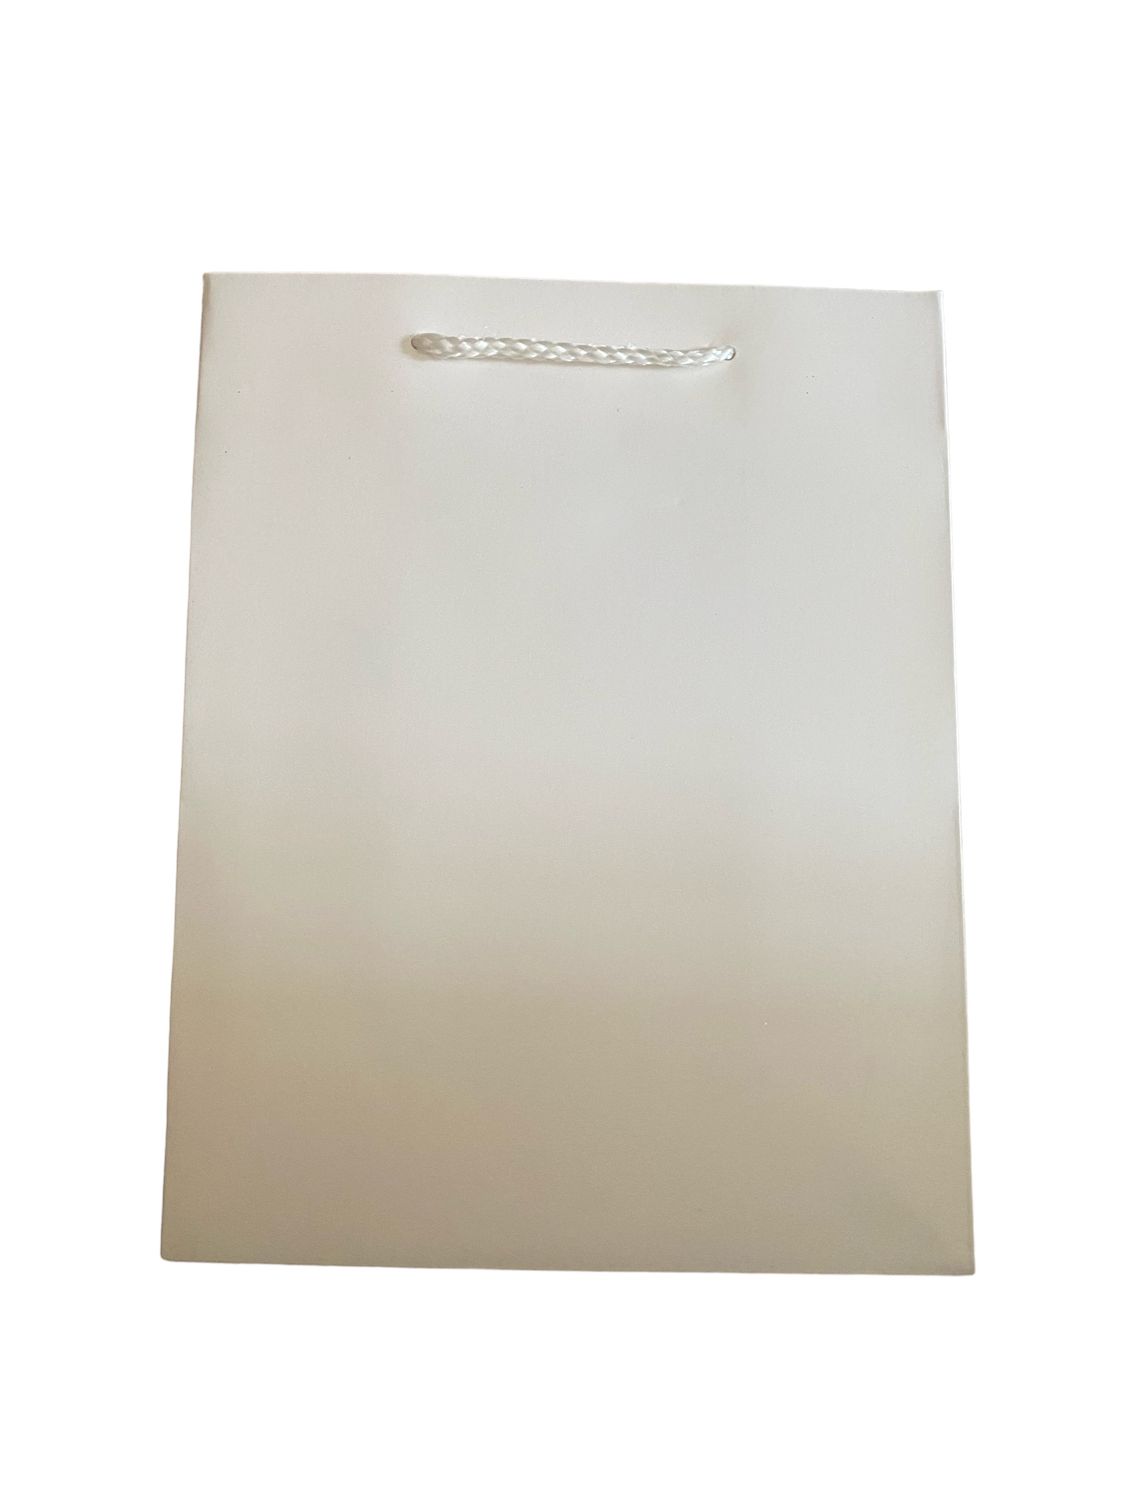 Plain White Gift Bags Medium Pk3 (R12.50 Each)